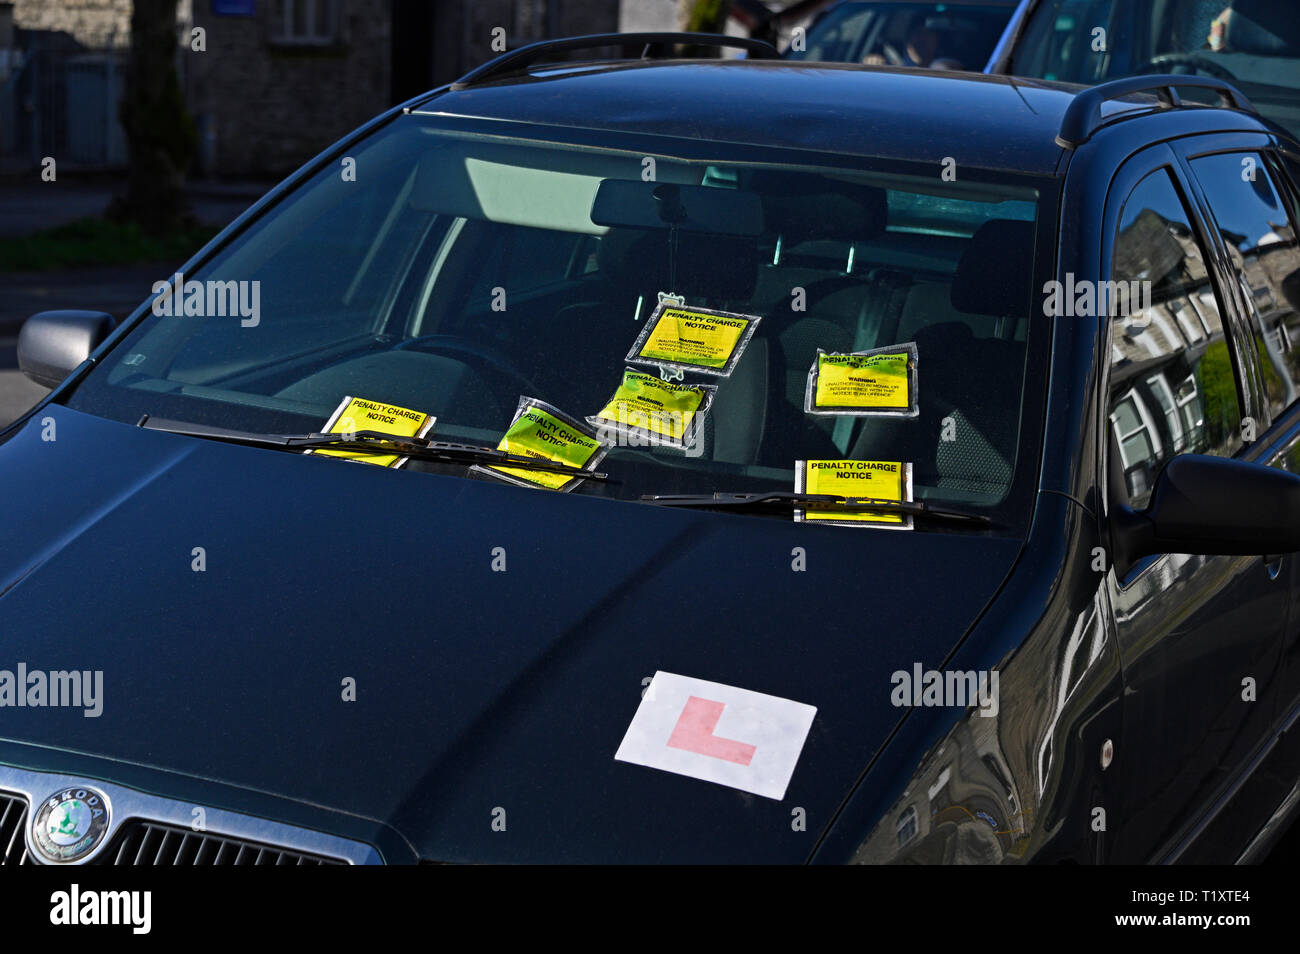 Détail de voiture en stationnement illégal sur double-lignes jaunes avec six avis de pénalité. Parkside Road, Kendal, Cumbria, Angleterre, Royaume-Uni, Europe Banque D'Images